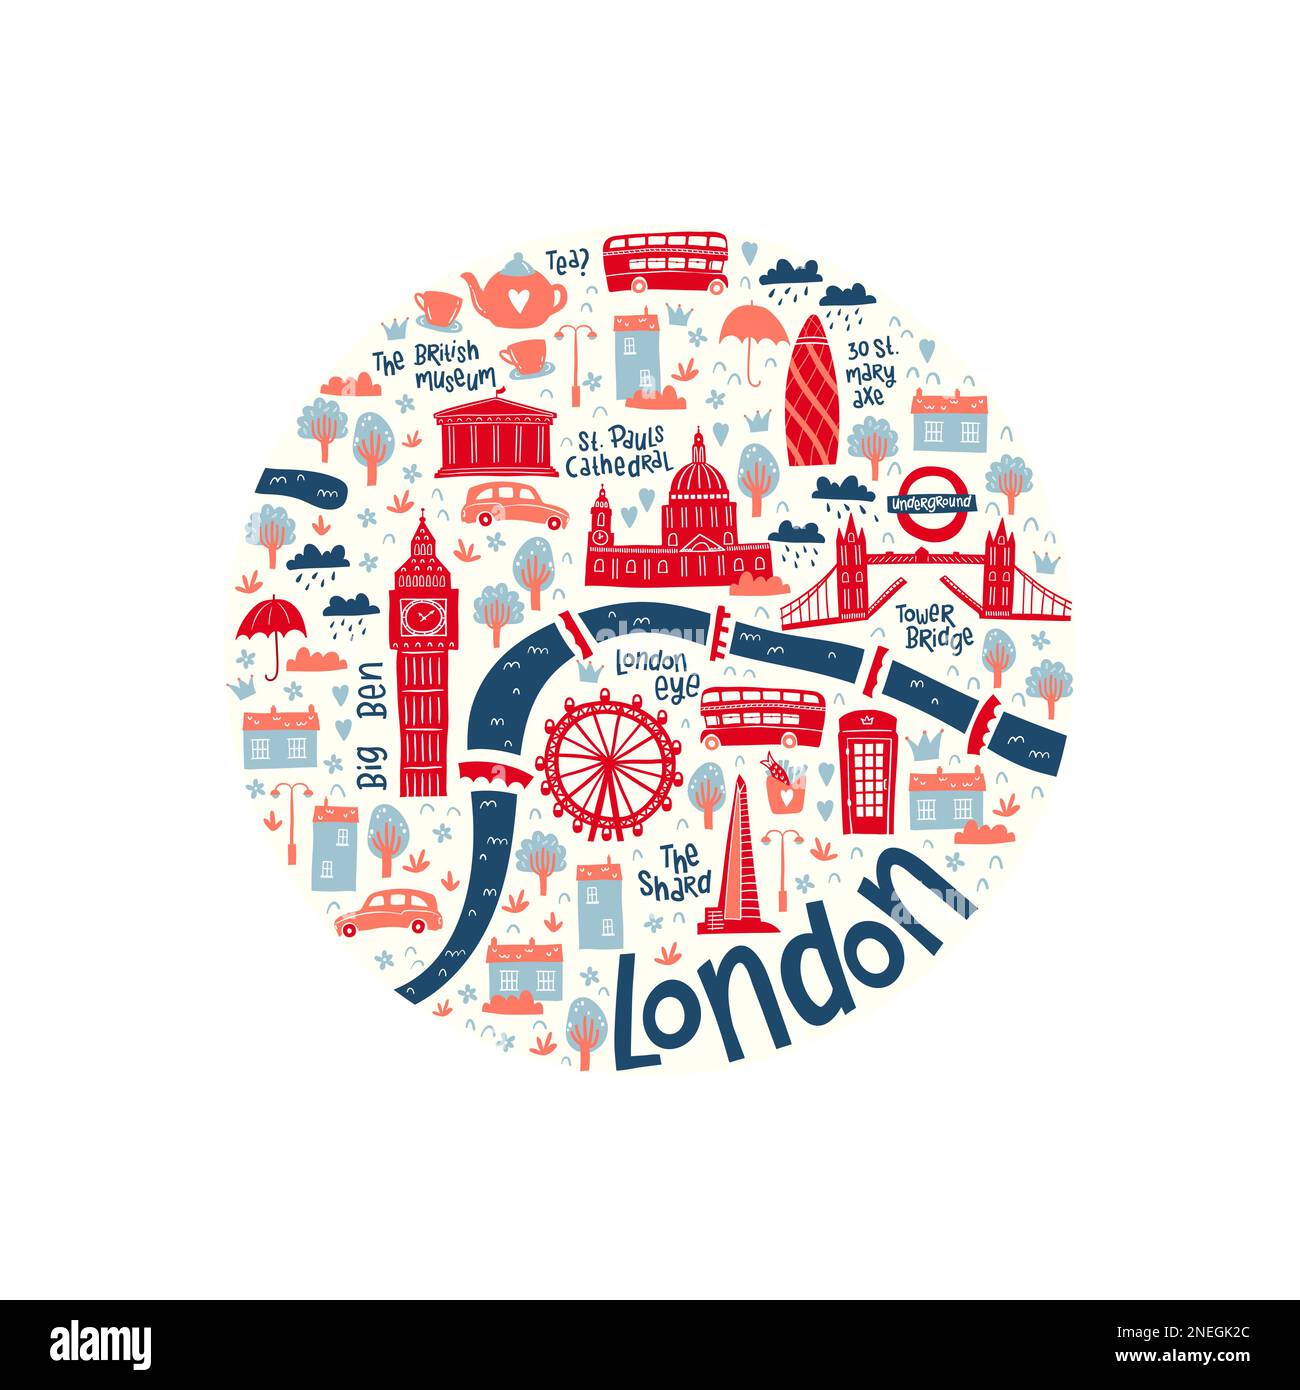 Hübsche, handgezeichnete Karte von London mit Kritzelelementen, Sehenswürdigkeiten, Gebäuden - großartig für Postkarten, Drucke, Banner, Tapeten - Vektordesign Stock Vektor